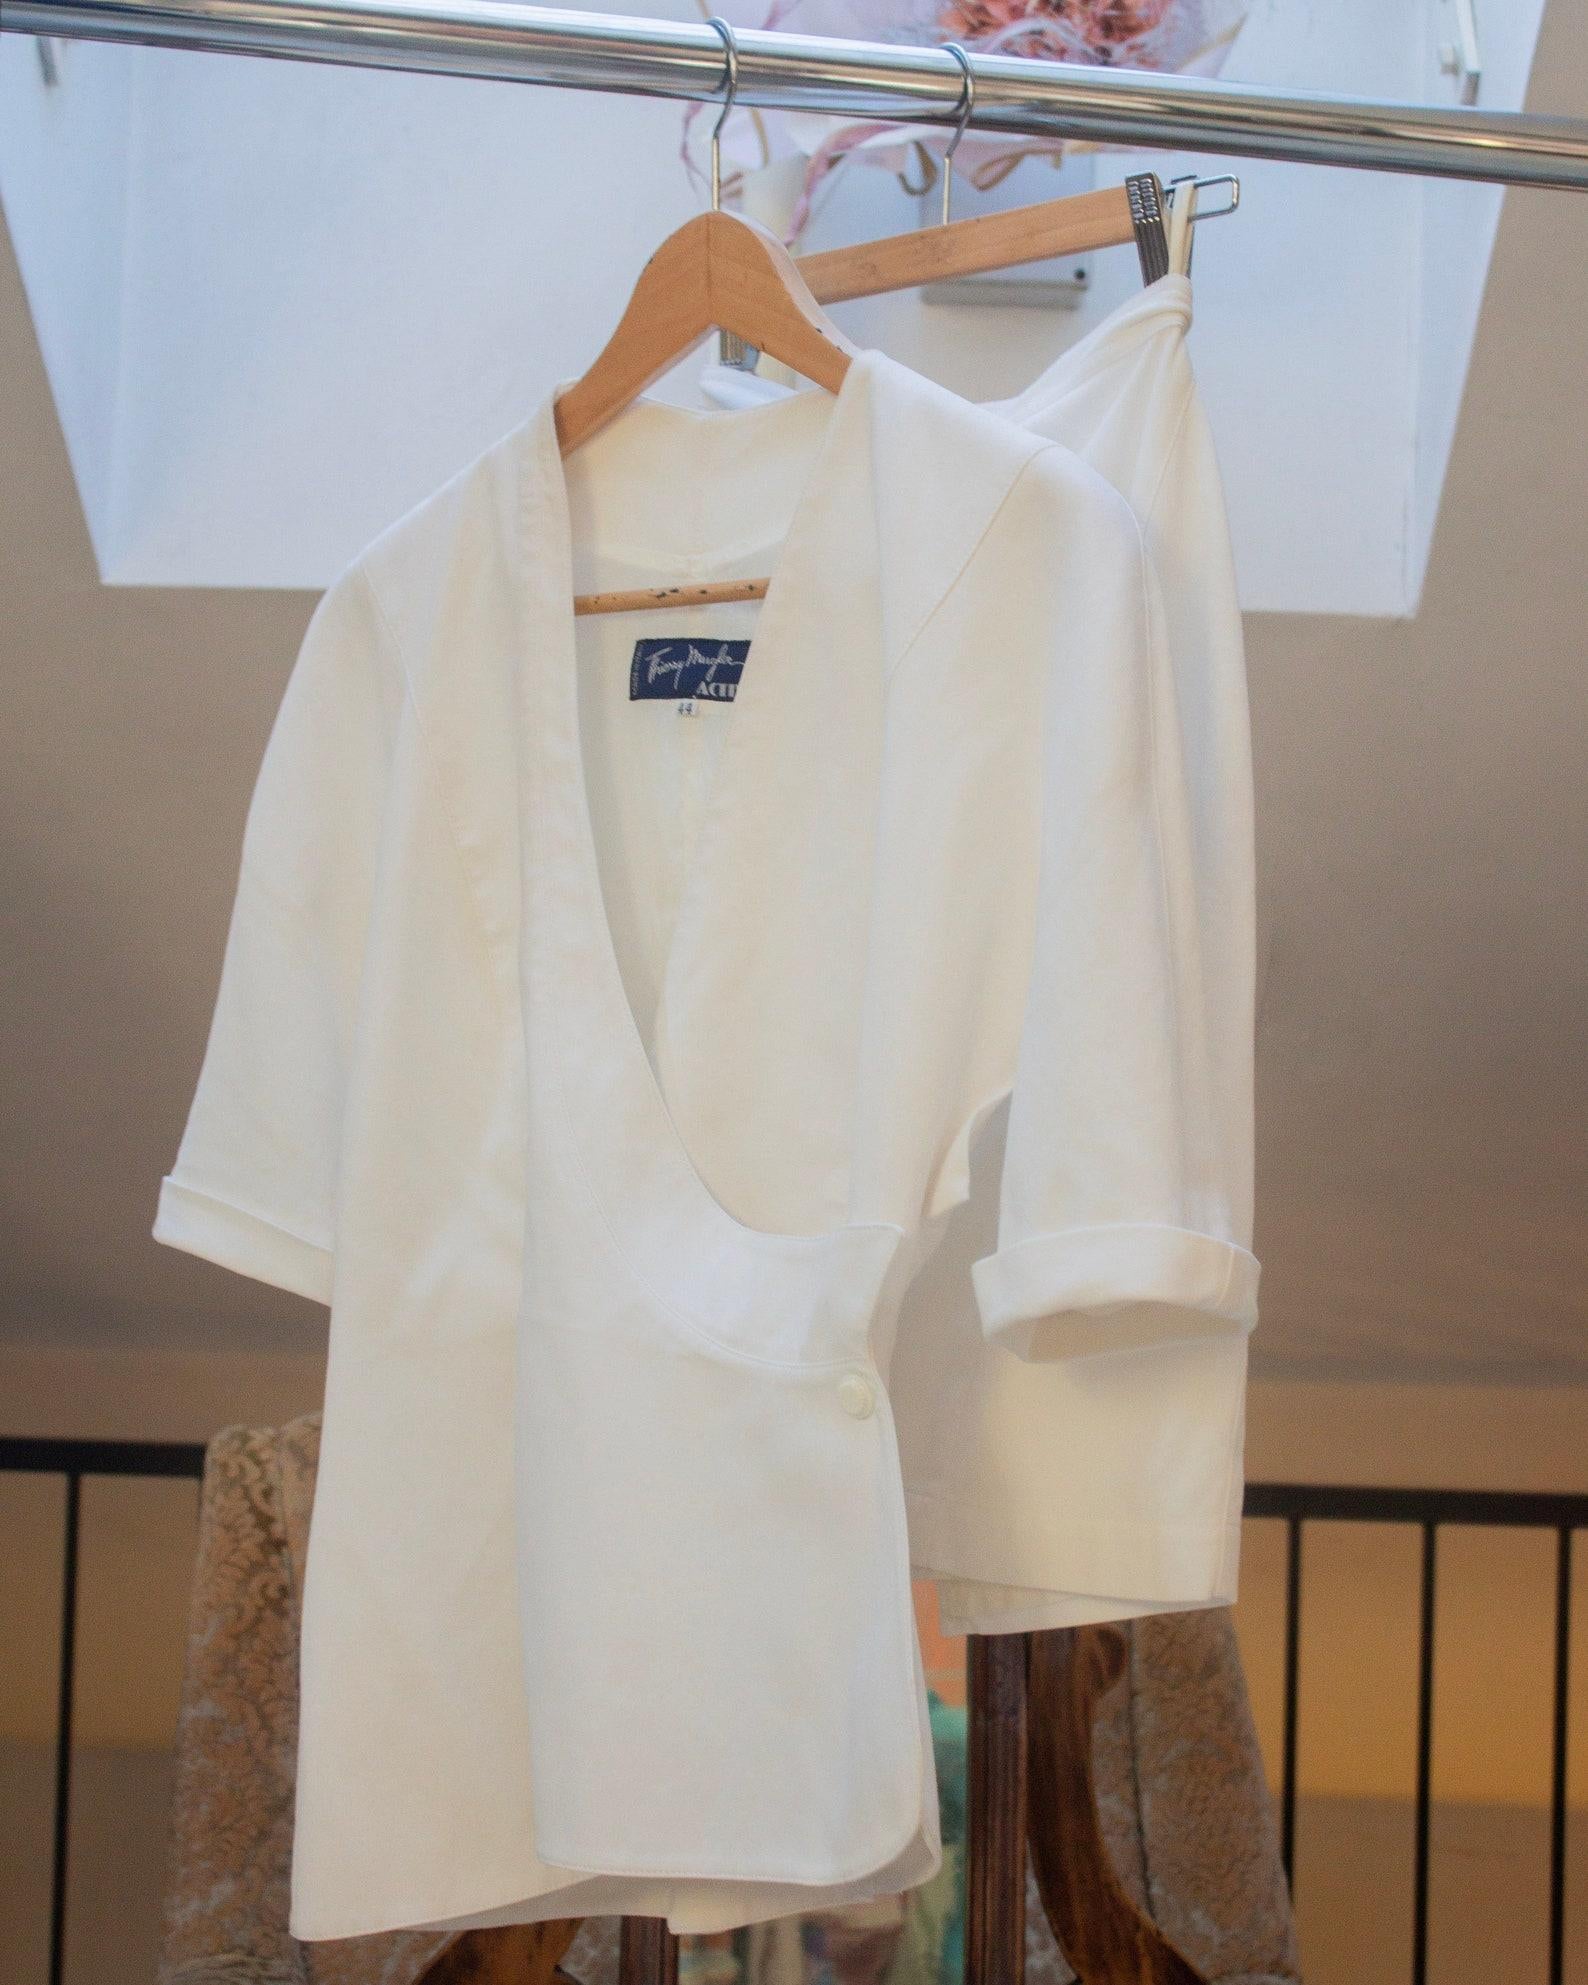 Thierry Mugler Activ début des années 90 tailleur jupe dramatique en coton blanc avec col V profond, veste architecturale en sablier et mini jupe crayon (S)
La veste et la jupe sont entièrement doublées 
Veste ajustée en forme de sablier 
100%